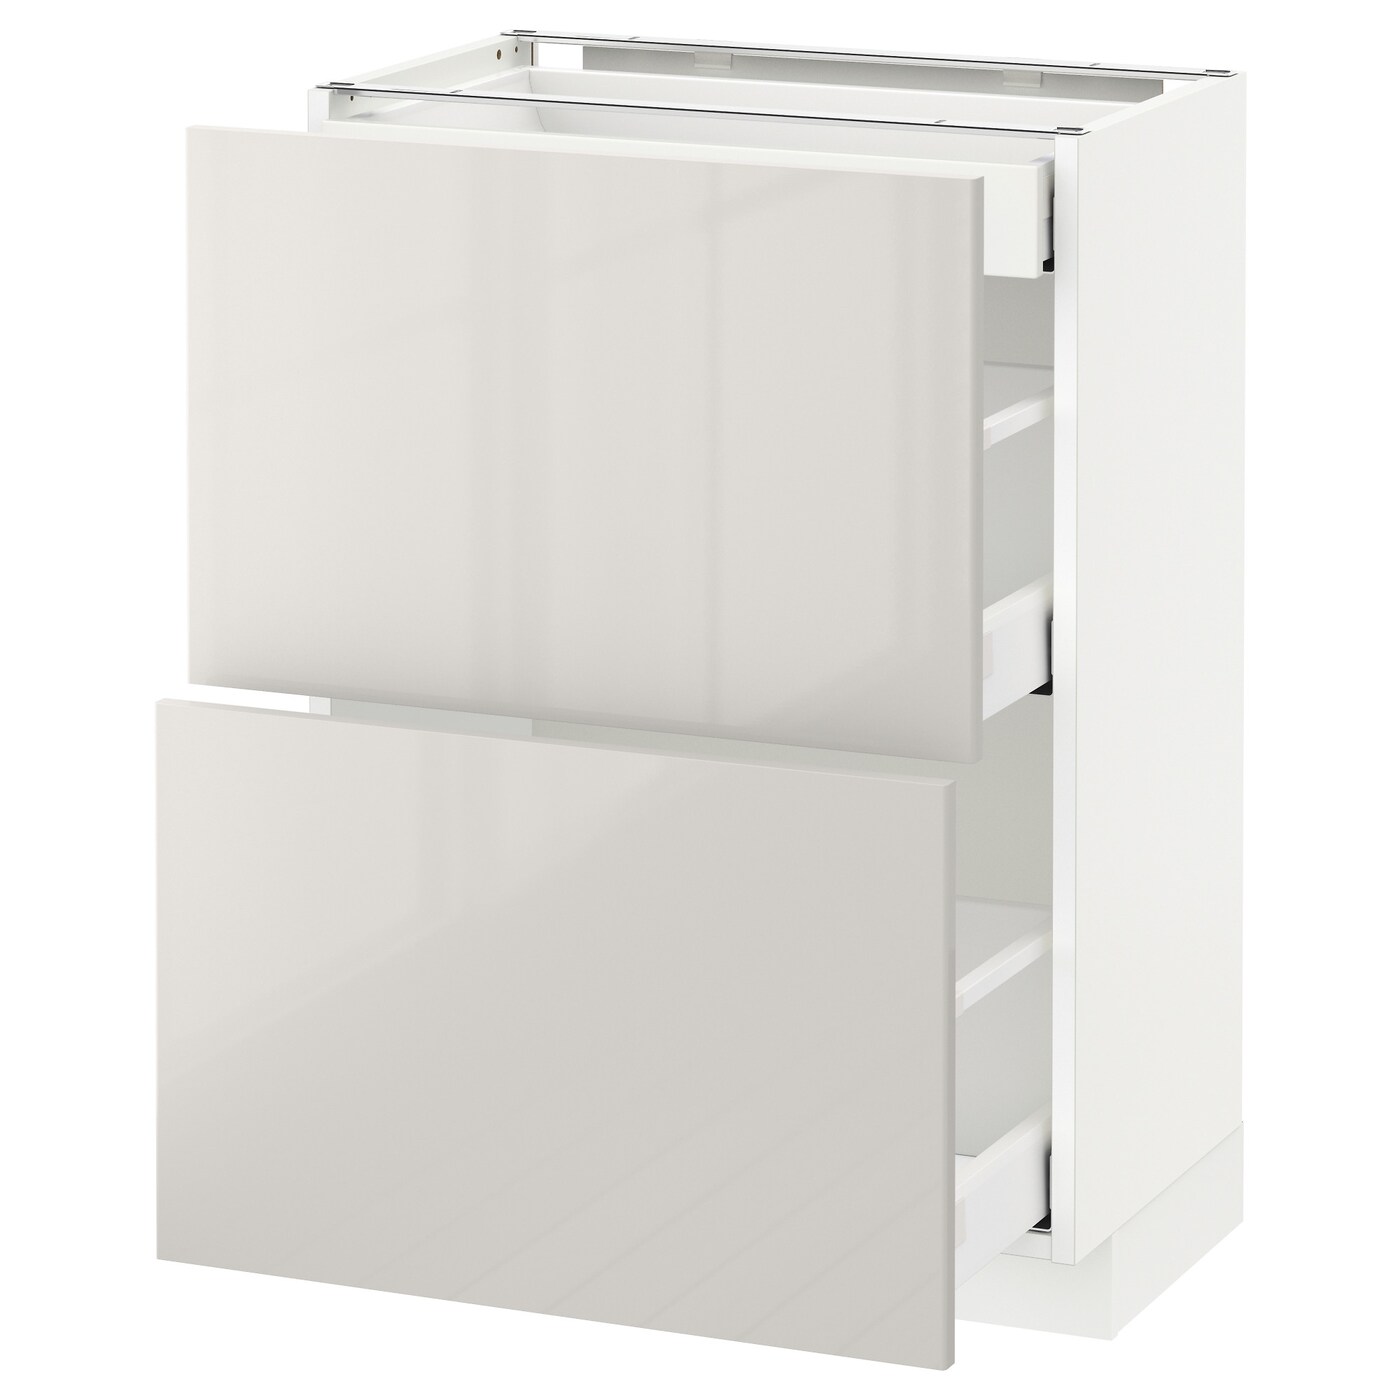 Напольный кухонный шкаф  - IKEA METOD MAXIMERA, 88x39x60см, белый/светло-серый, МЕТОД МАКСИМЕРА ИКЕА